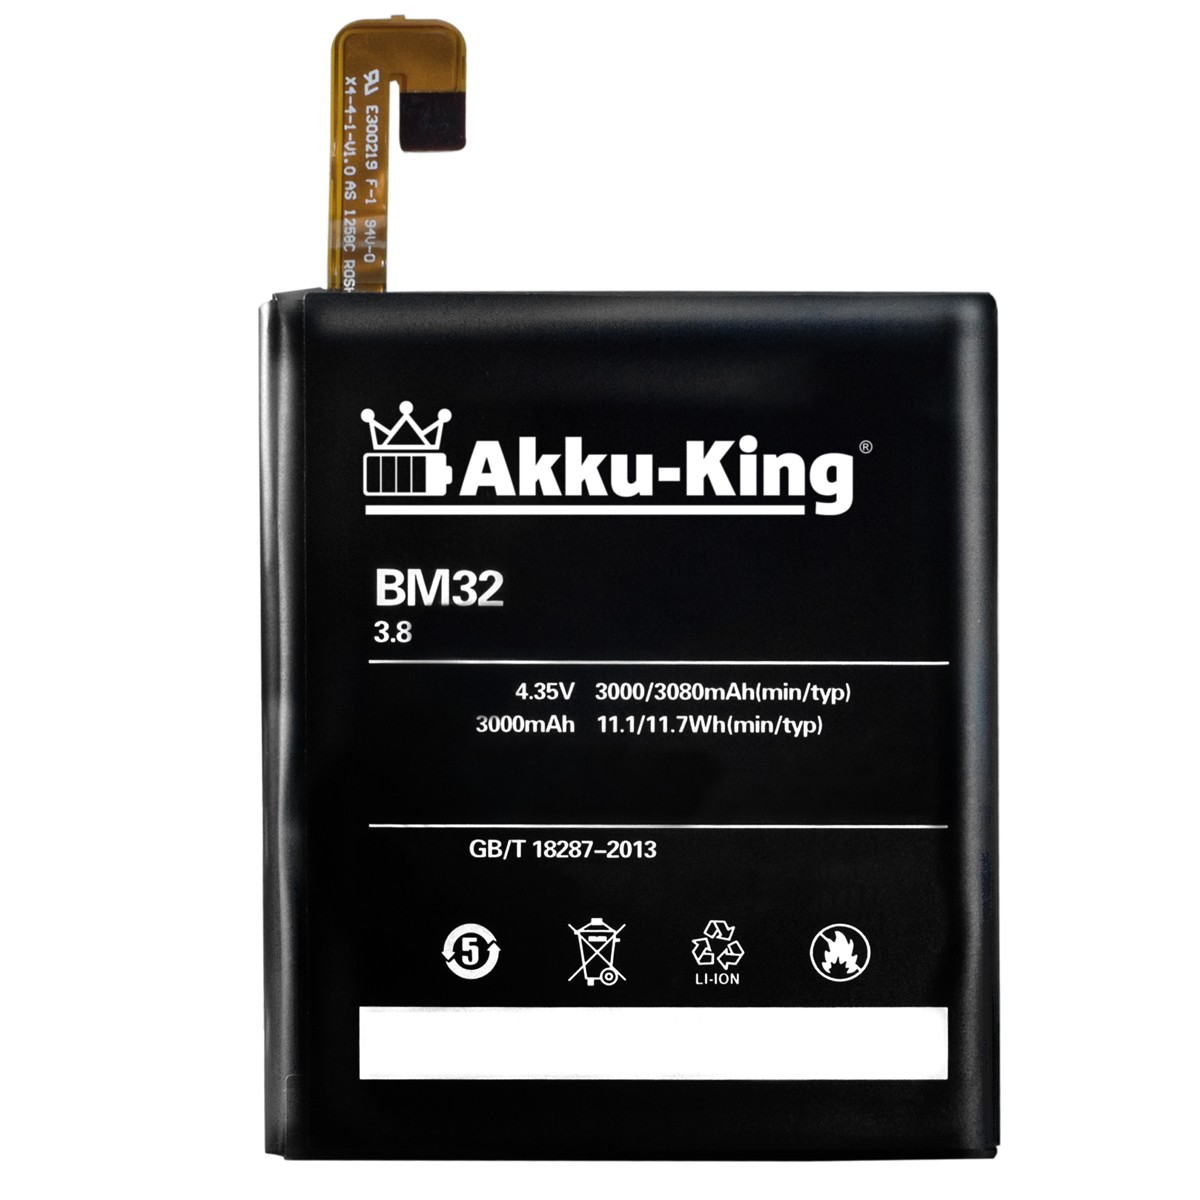 kompatibel Handy-Akku, 3.8 BM32 Li-Polymer Xiaomi AKKU-KING Volt, Akku mit 3000mAh